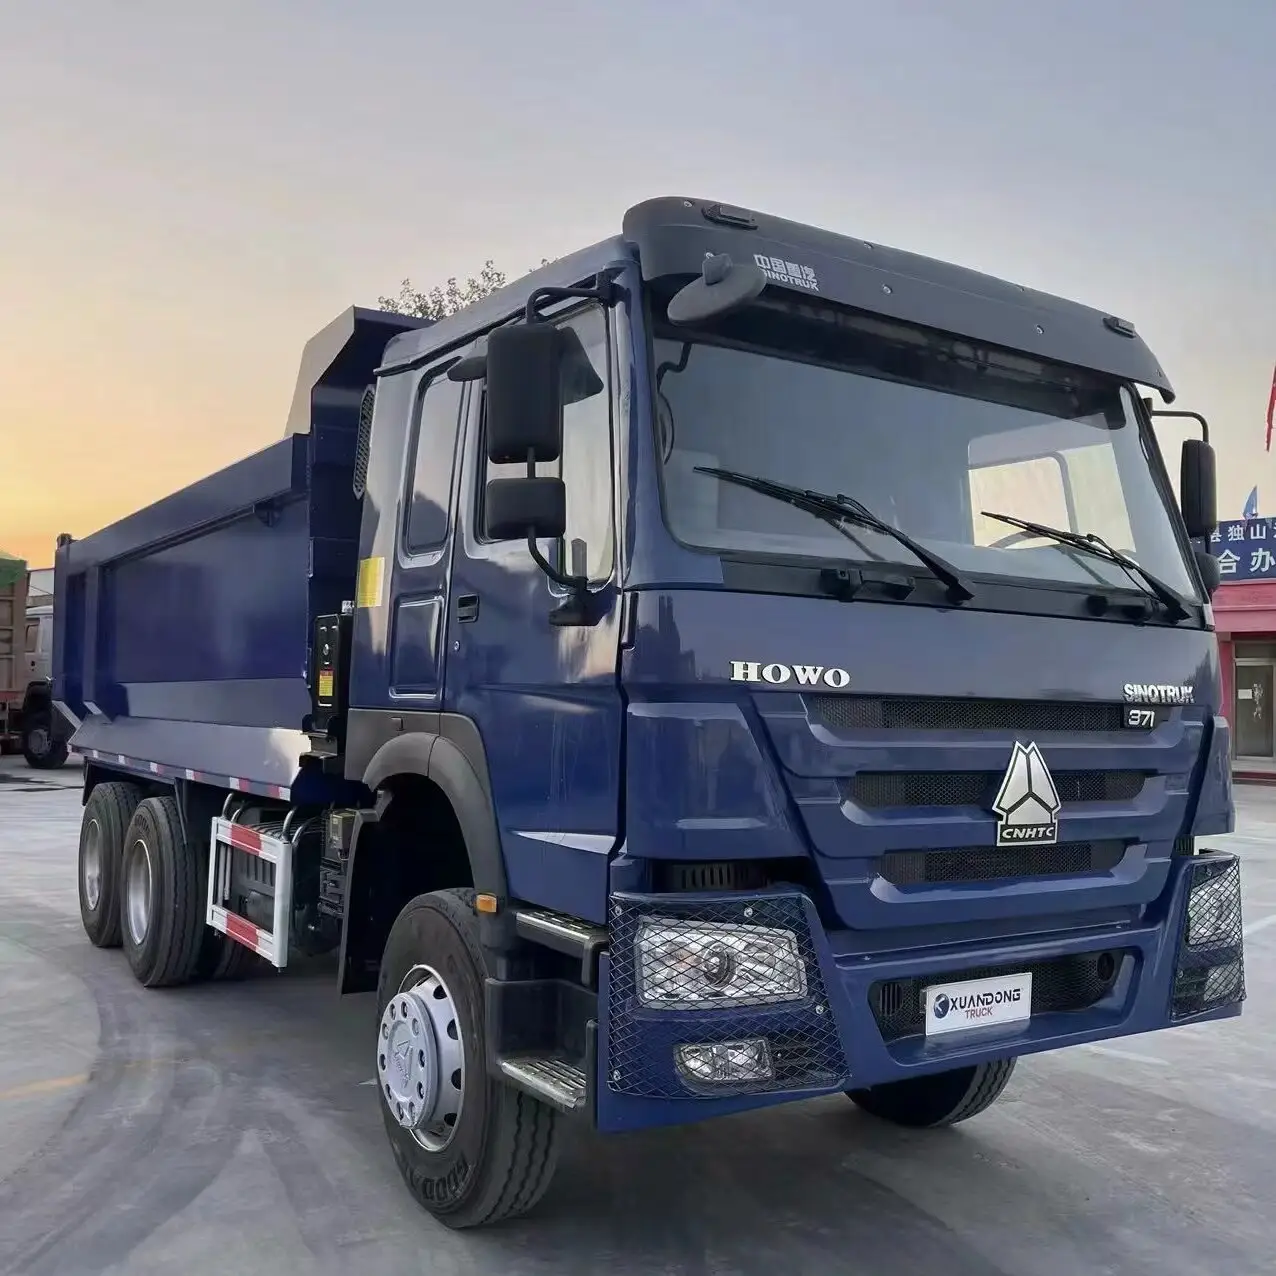 2021 चीनी प्रयुक्त नीला 6x4 10 व्हील 60 टन 371HP बिक्री के लिए सबसे कम कीमत के साथ अच्छी स्थिति वाला डम्पर ट्रक।